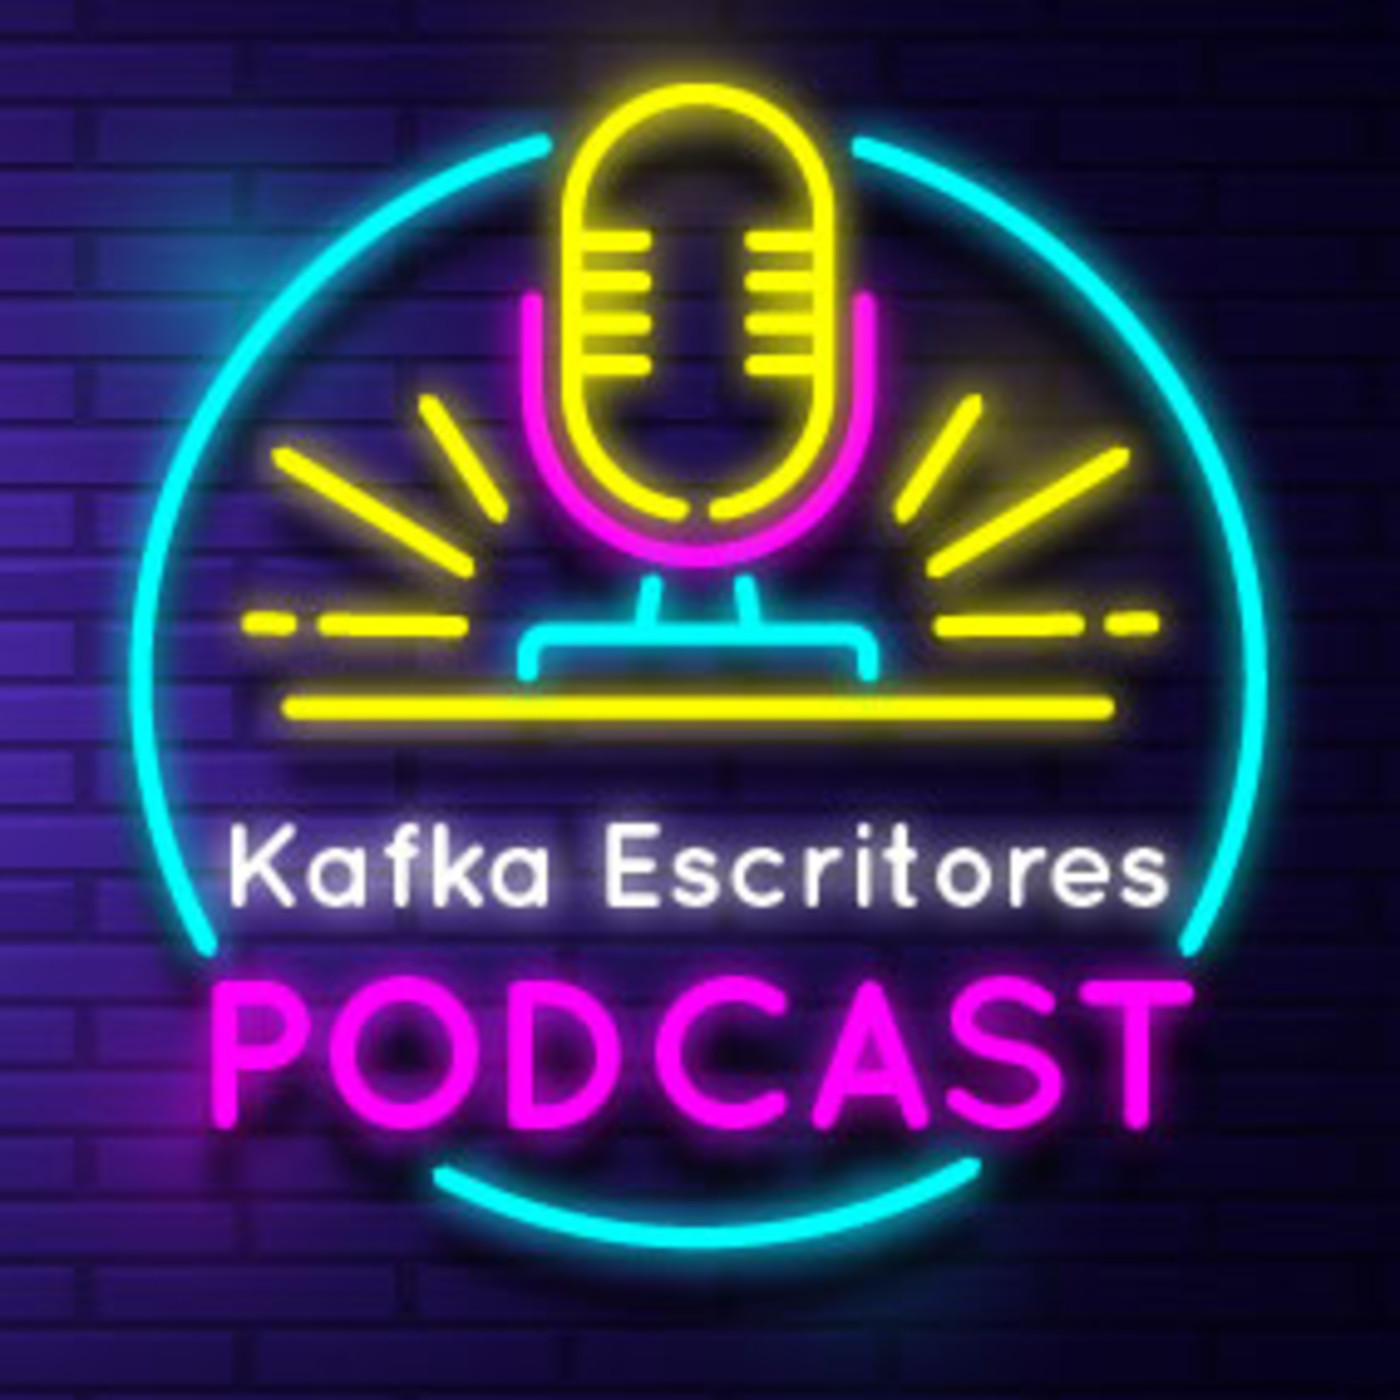 Kafka Escritores Podcast